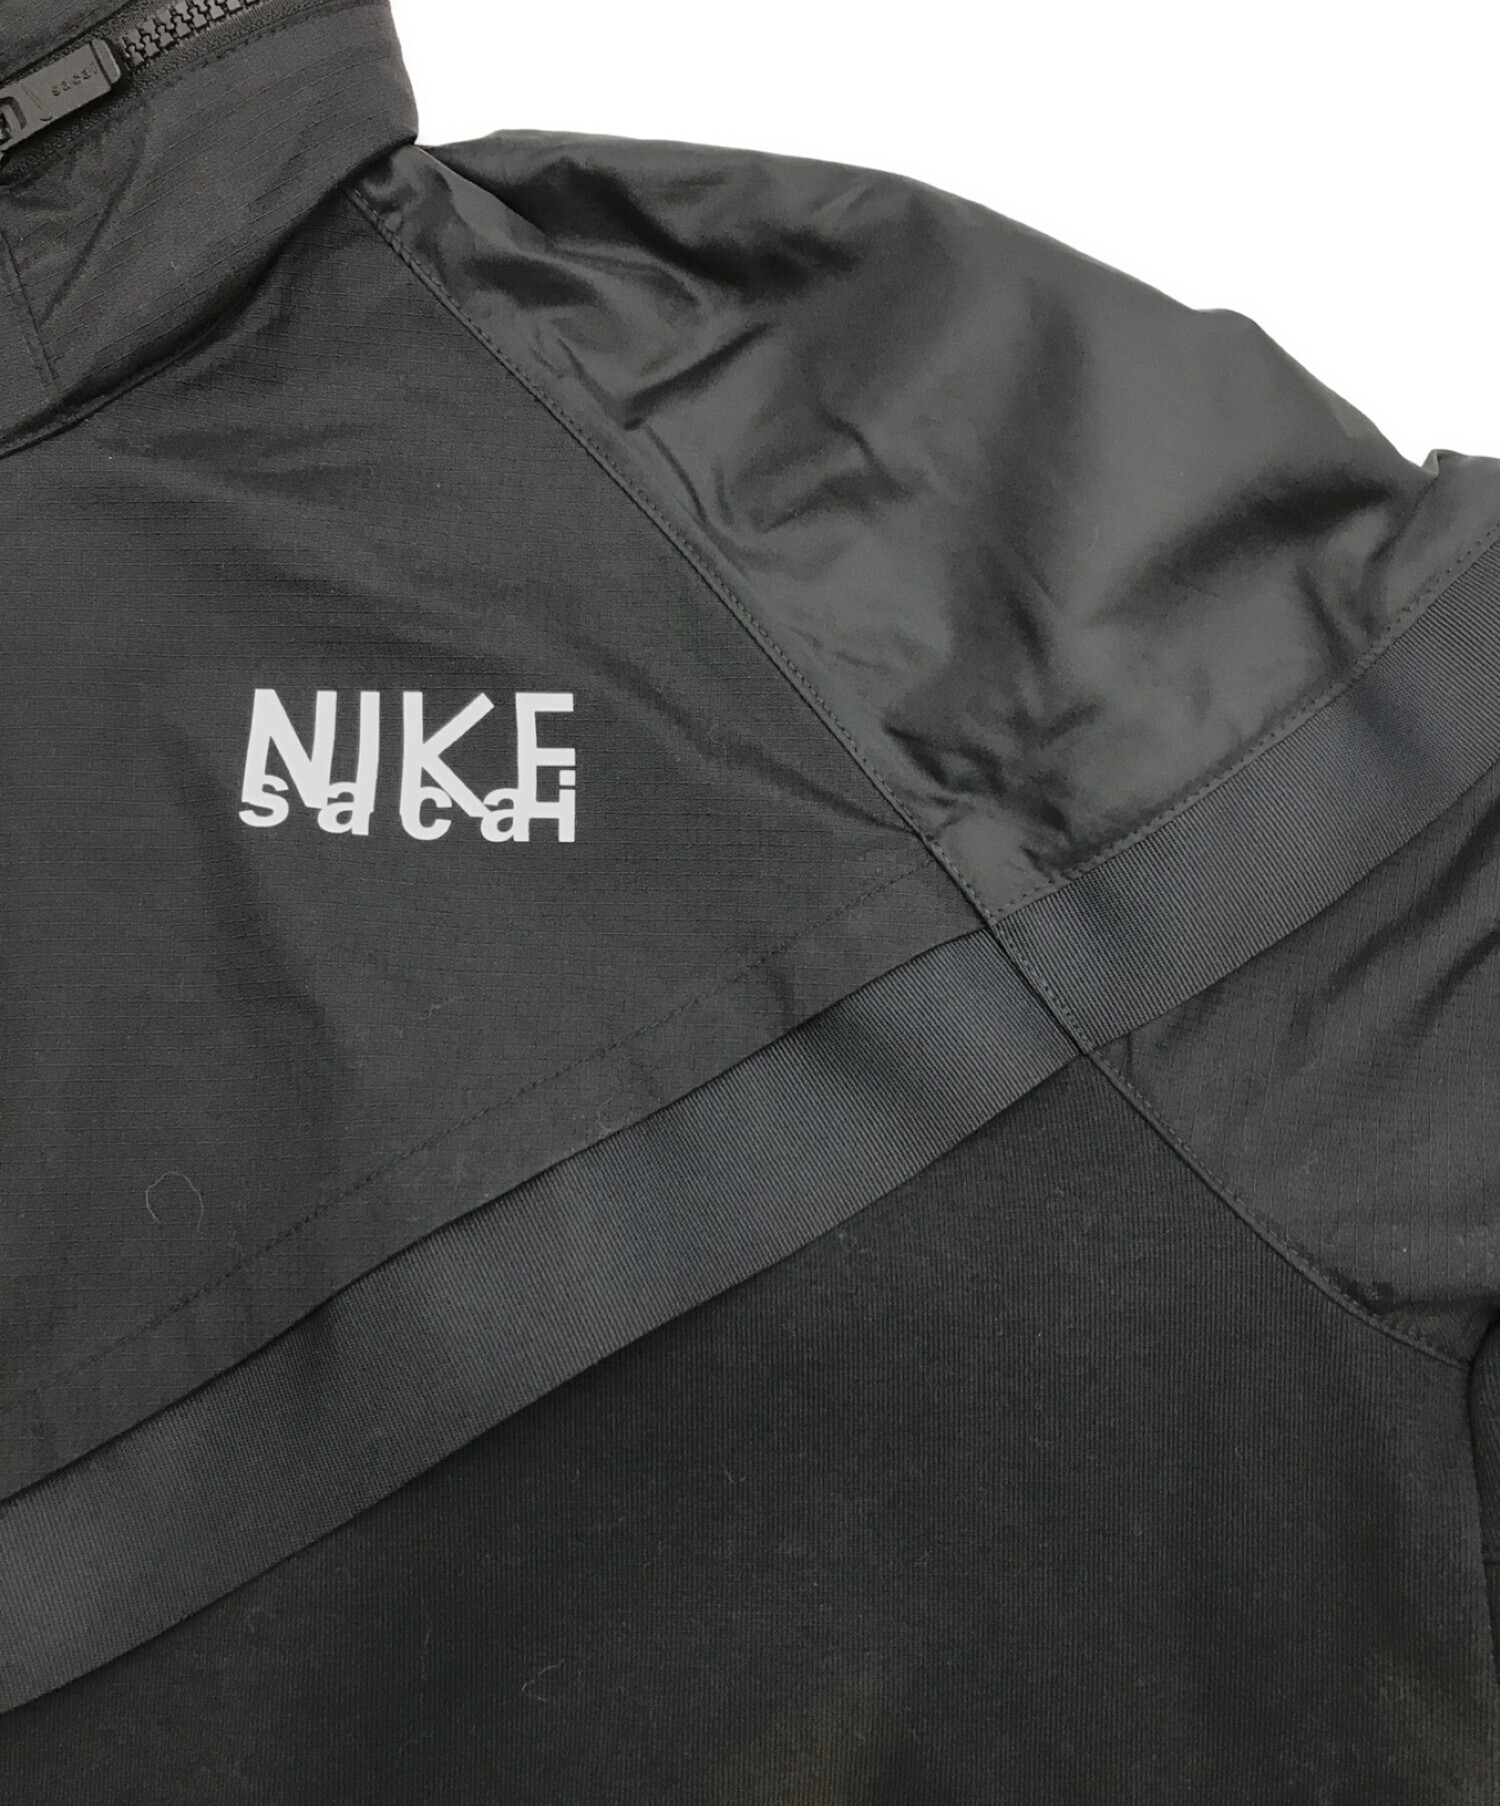 NIKE×sacai (ナイキ×サカイ) フルジップフーディ ブラック サイズ:XL